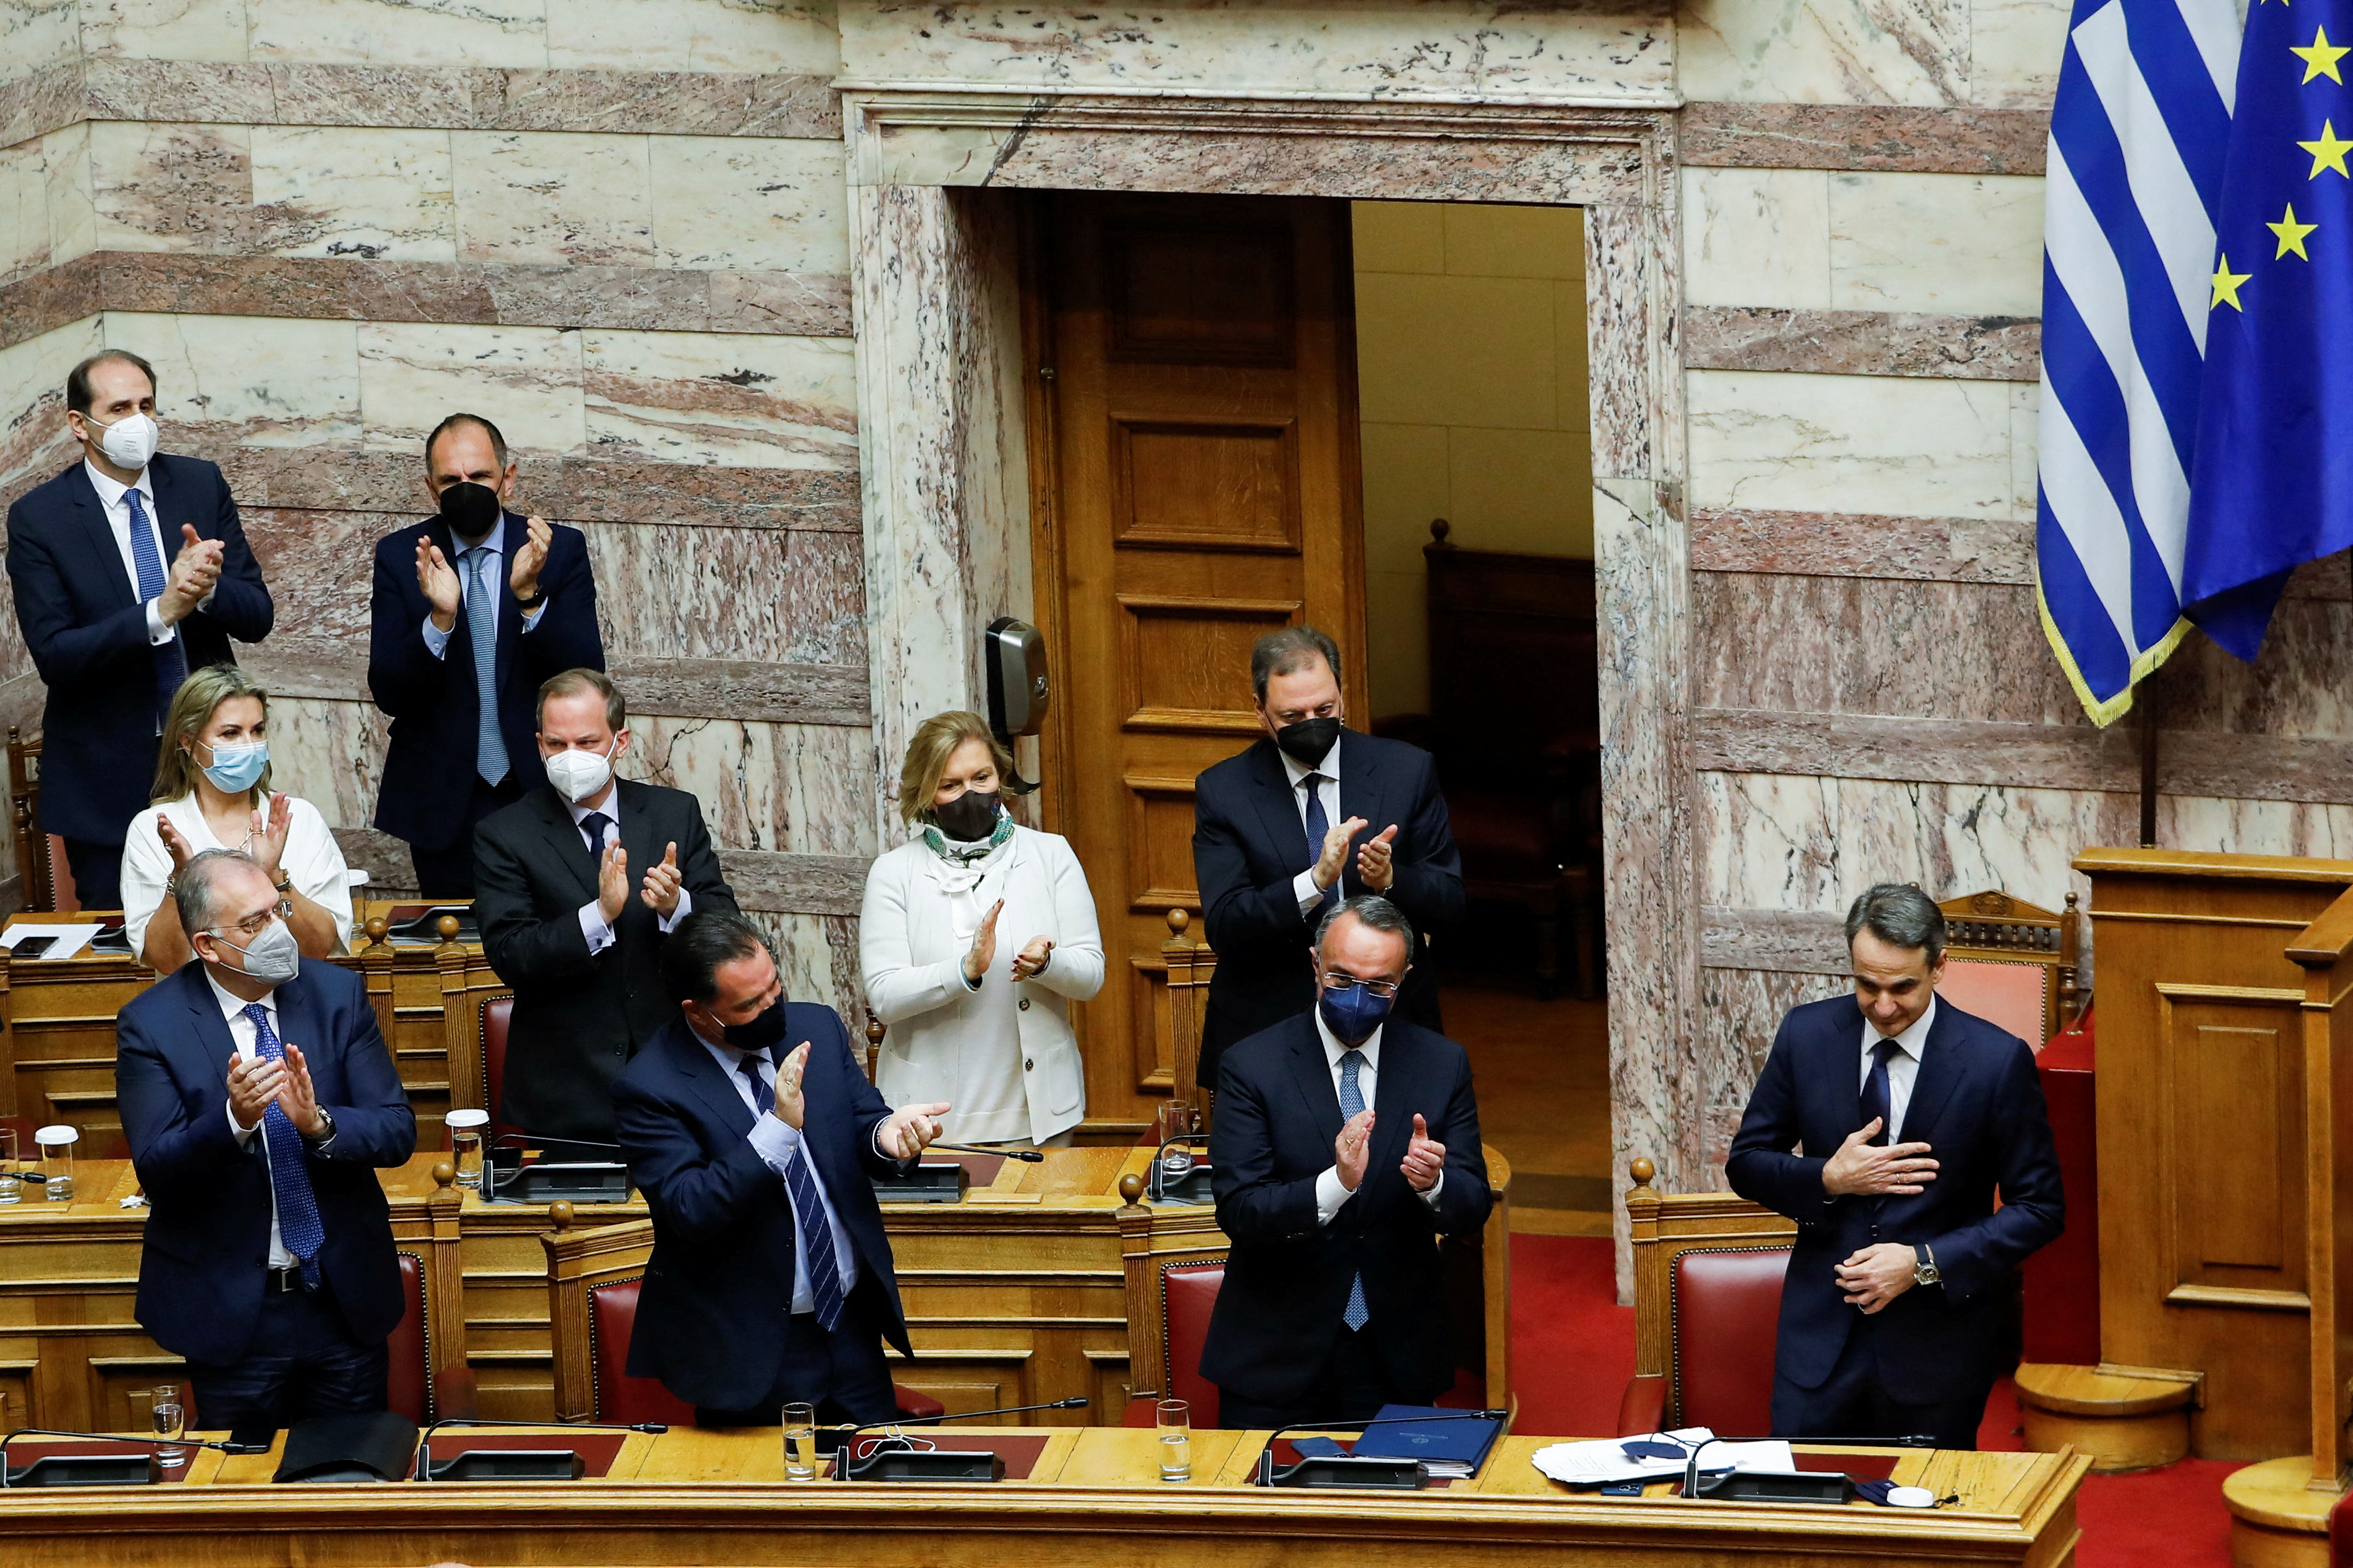 Ο Έλληνας Πρωθυπουργός Κυριάκος Μητσοτάκης δέχεται χειροκροτήματα από τους υπουργούς της κυβέρνησής του μετά από ομιλία κατά τη διάρκεια κοινοβουλευτικής συνόδου πριν από την ψήφο εμπιστοσύνης στην Αθήνα, Ελλάδα, 30 Ιανουαρίου 2022. REUTERS/Κώστας Μπαλτάς